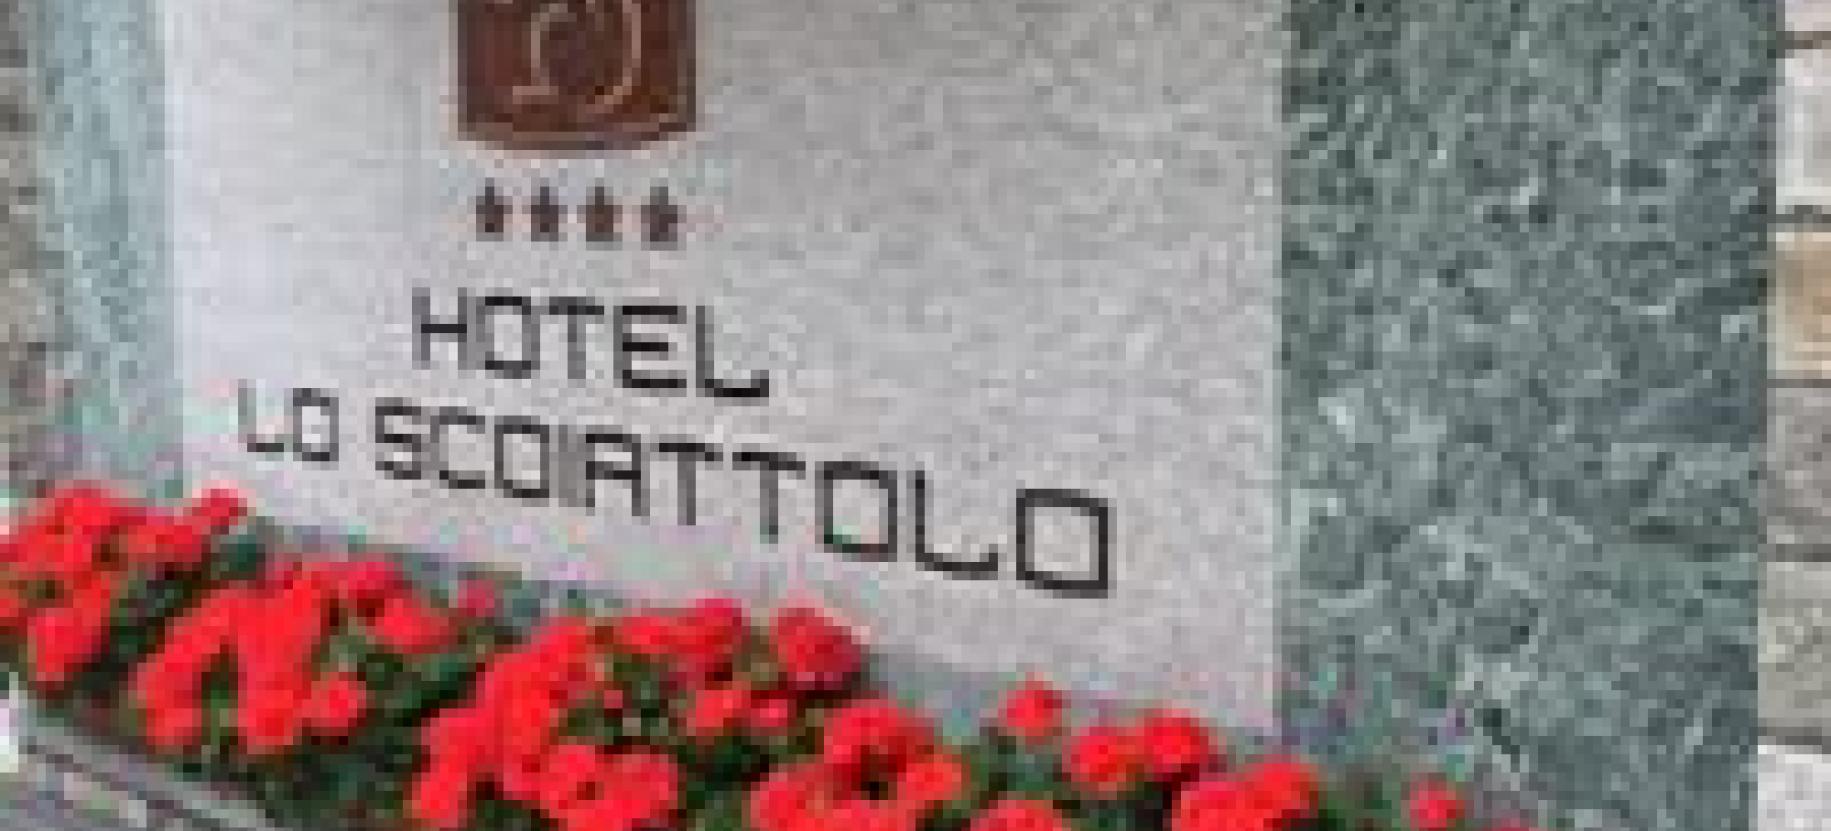 Hotel Lo Scoiattolo